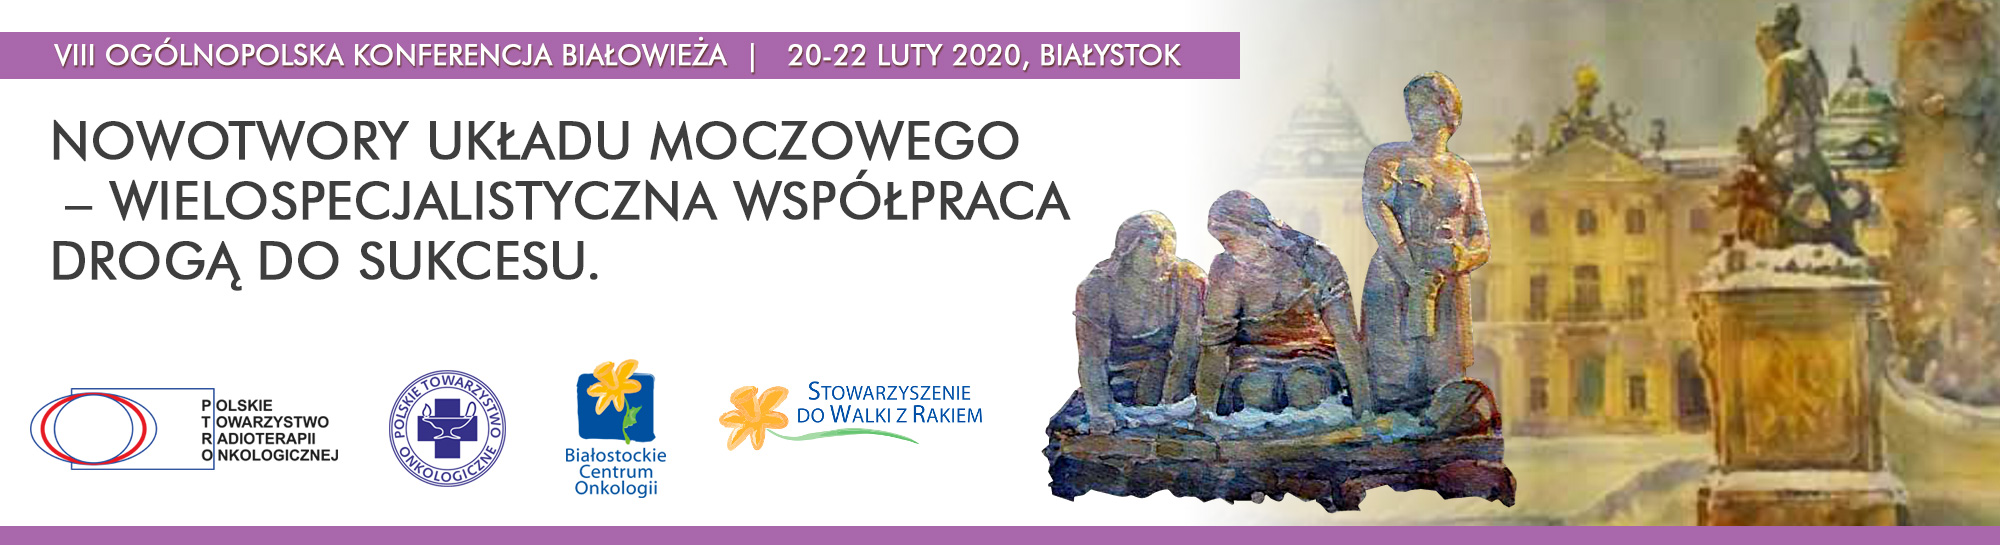 Konferencja - Nowotwory układu moczowego | 2020 Białystok